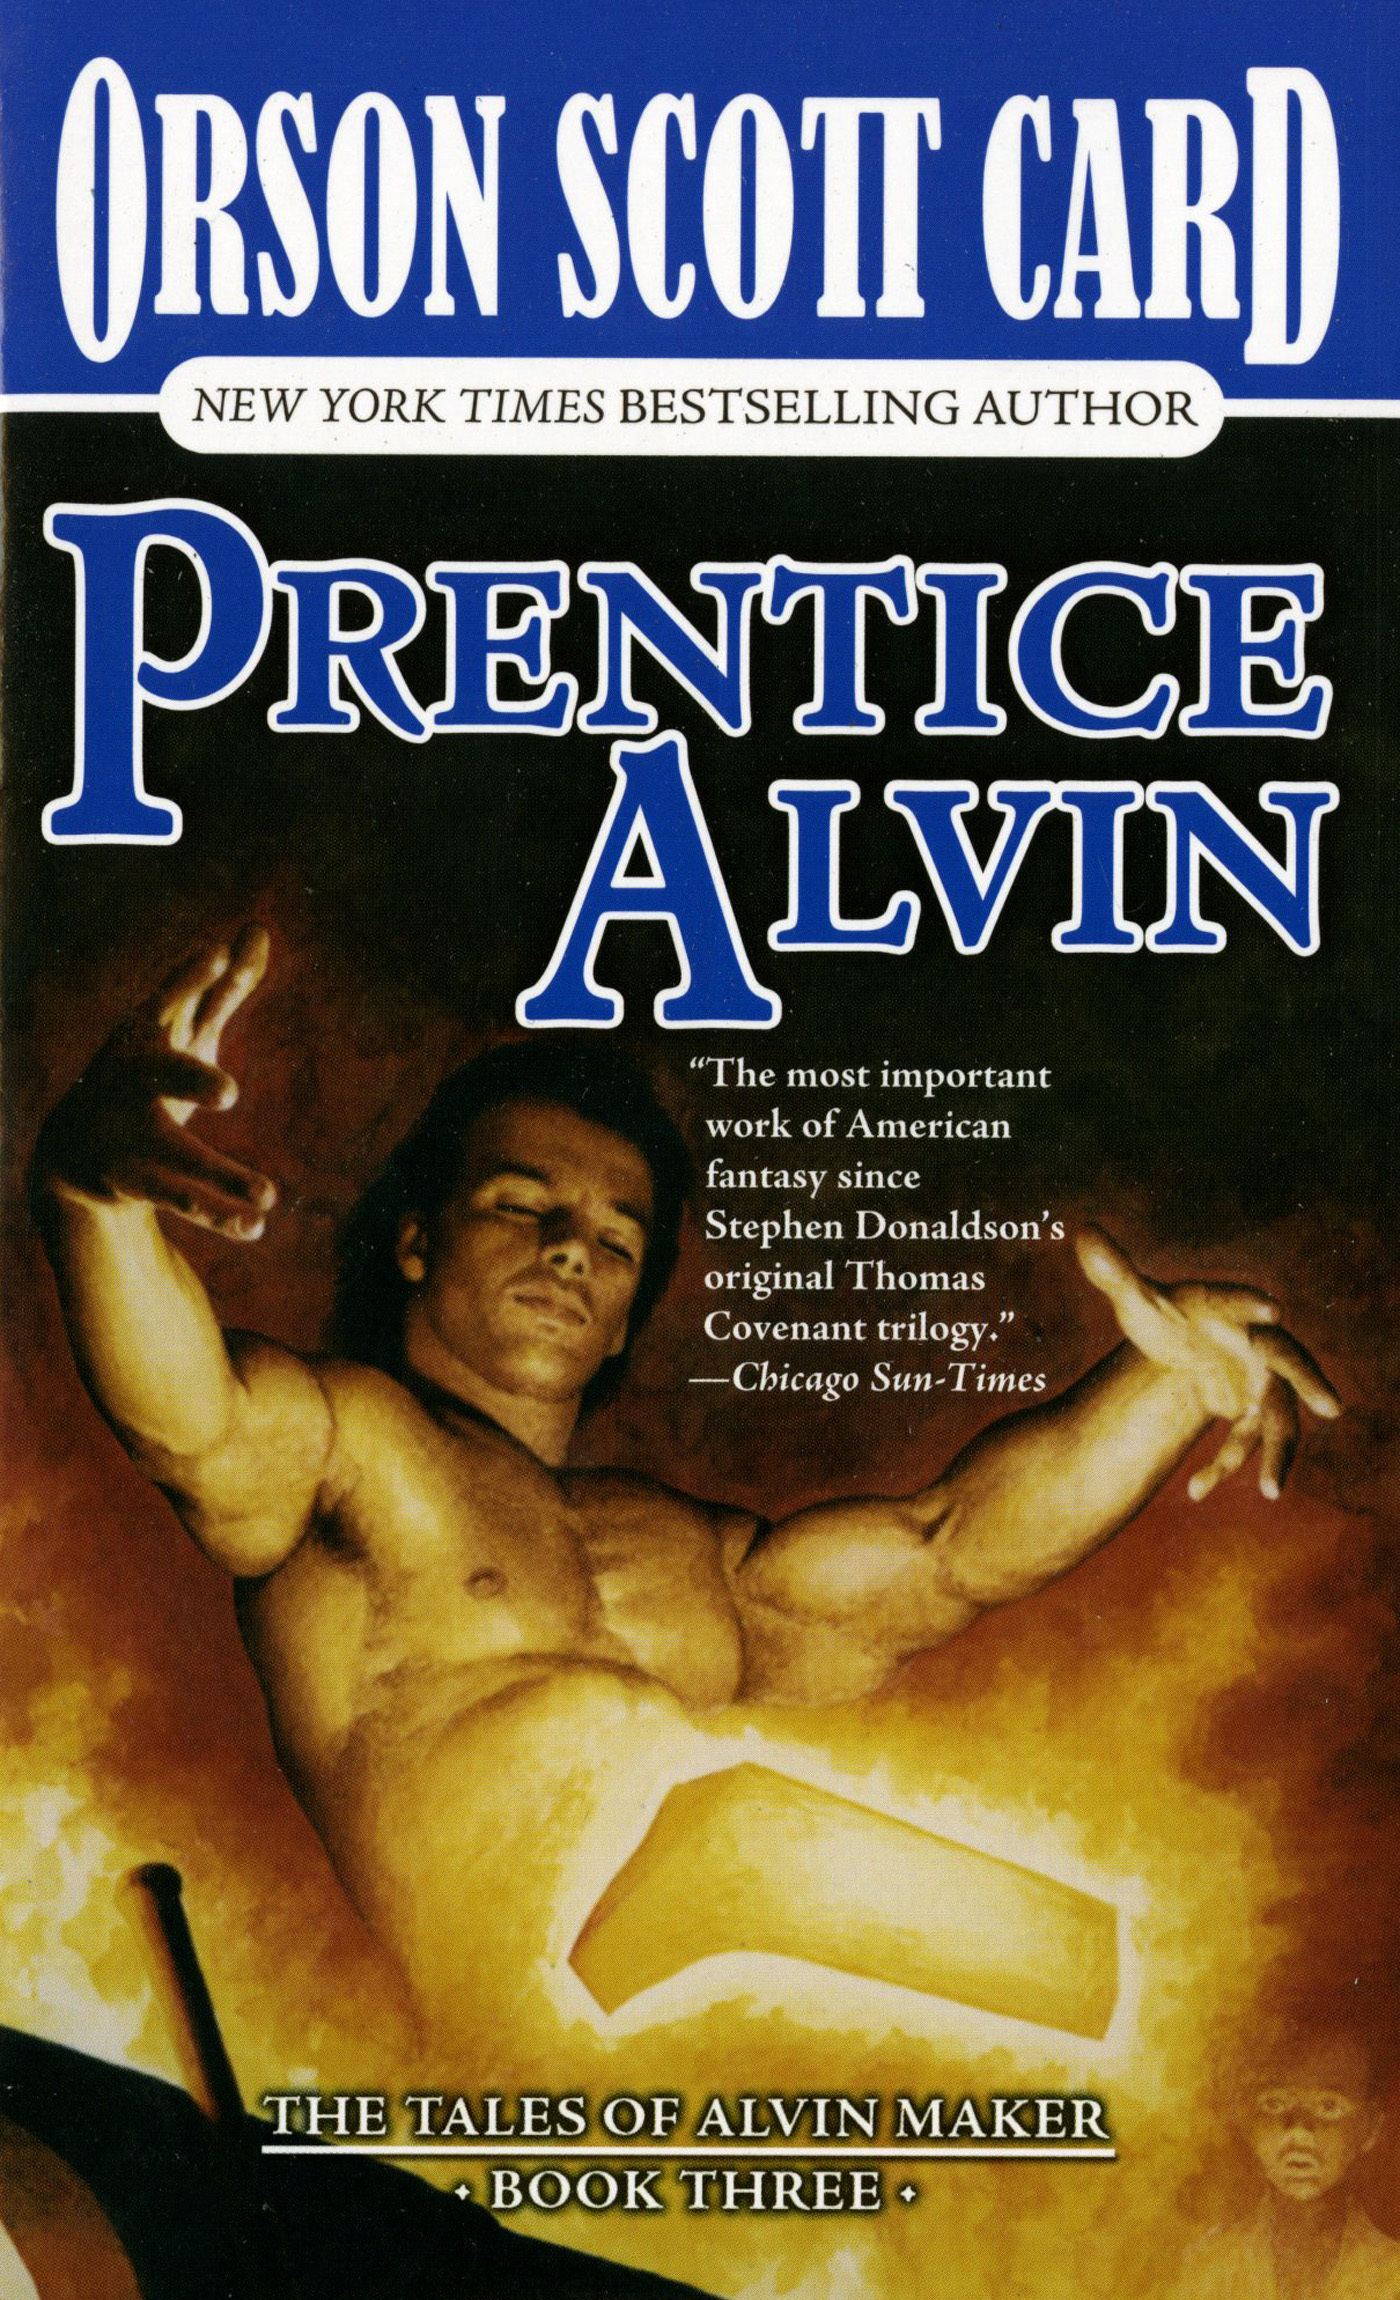 Prentice Alvin : The Tales of Alvin Maker, Book Three by Orson Scott Card